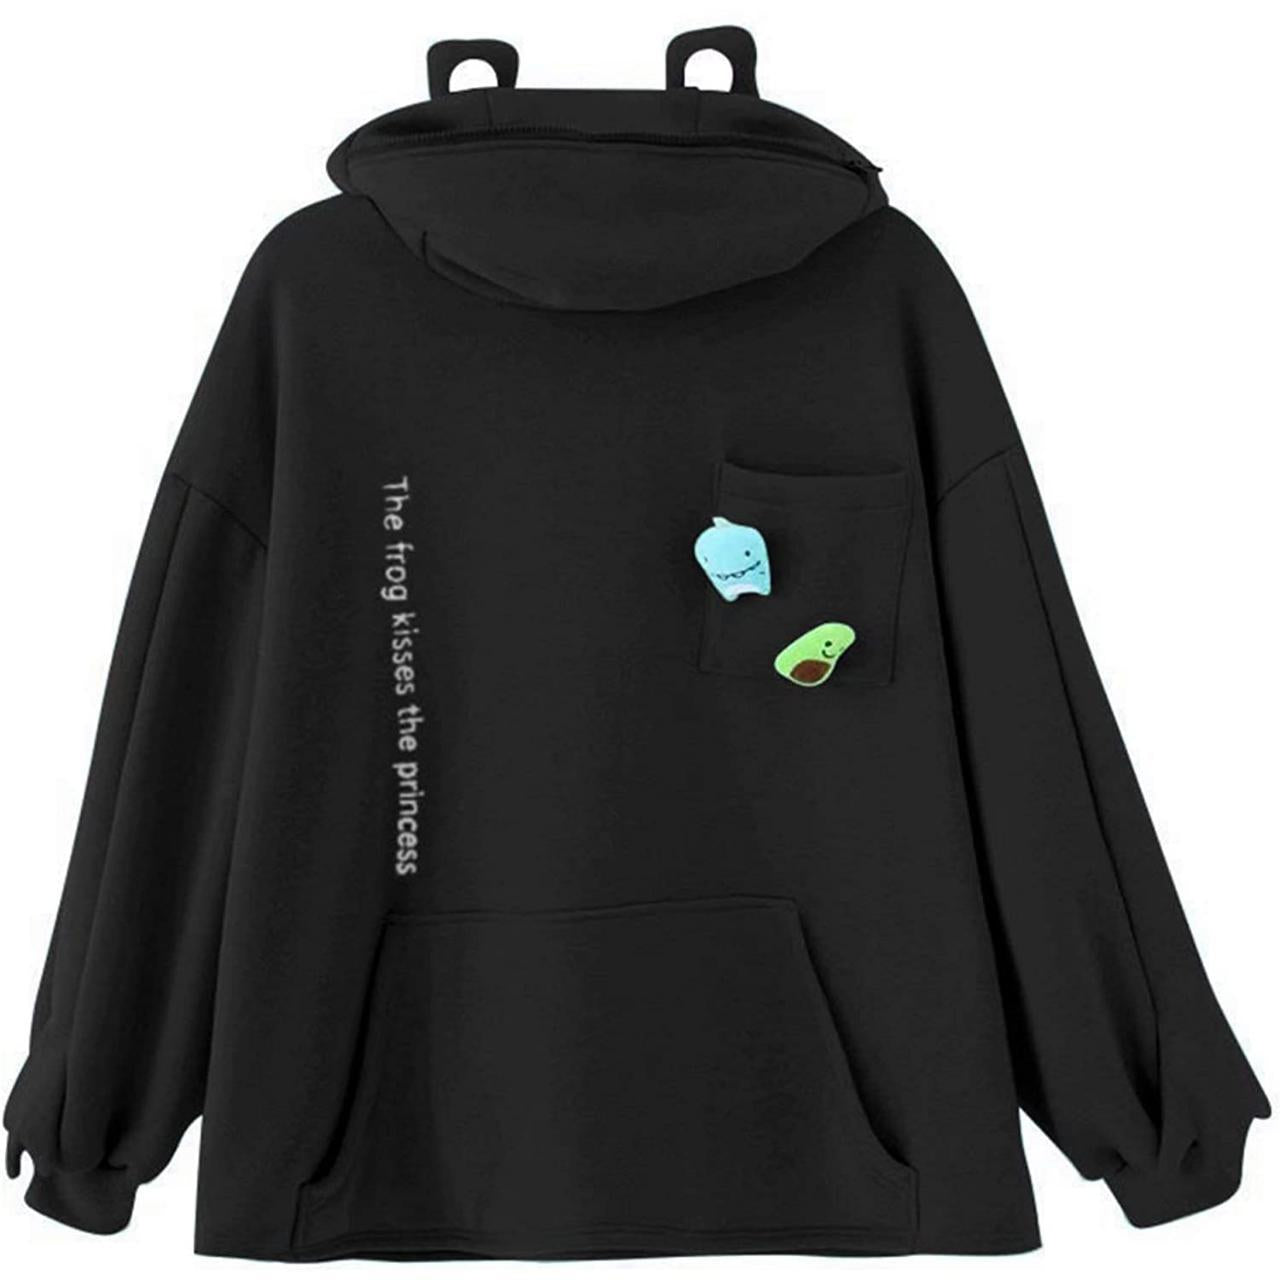 4 Colors (Black) Women Frog Hoodie Zipper Hooded Top Pullover Sweatshirt Casual Long Sleeve Top